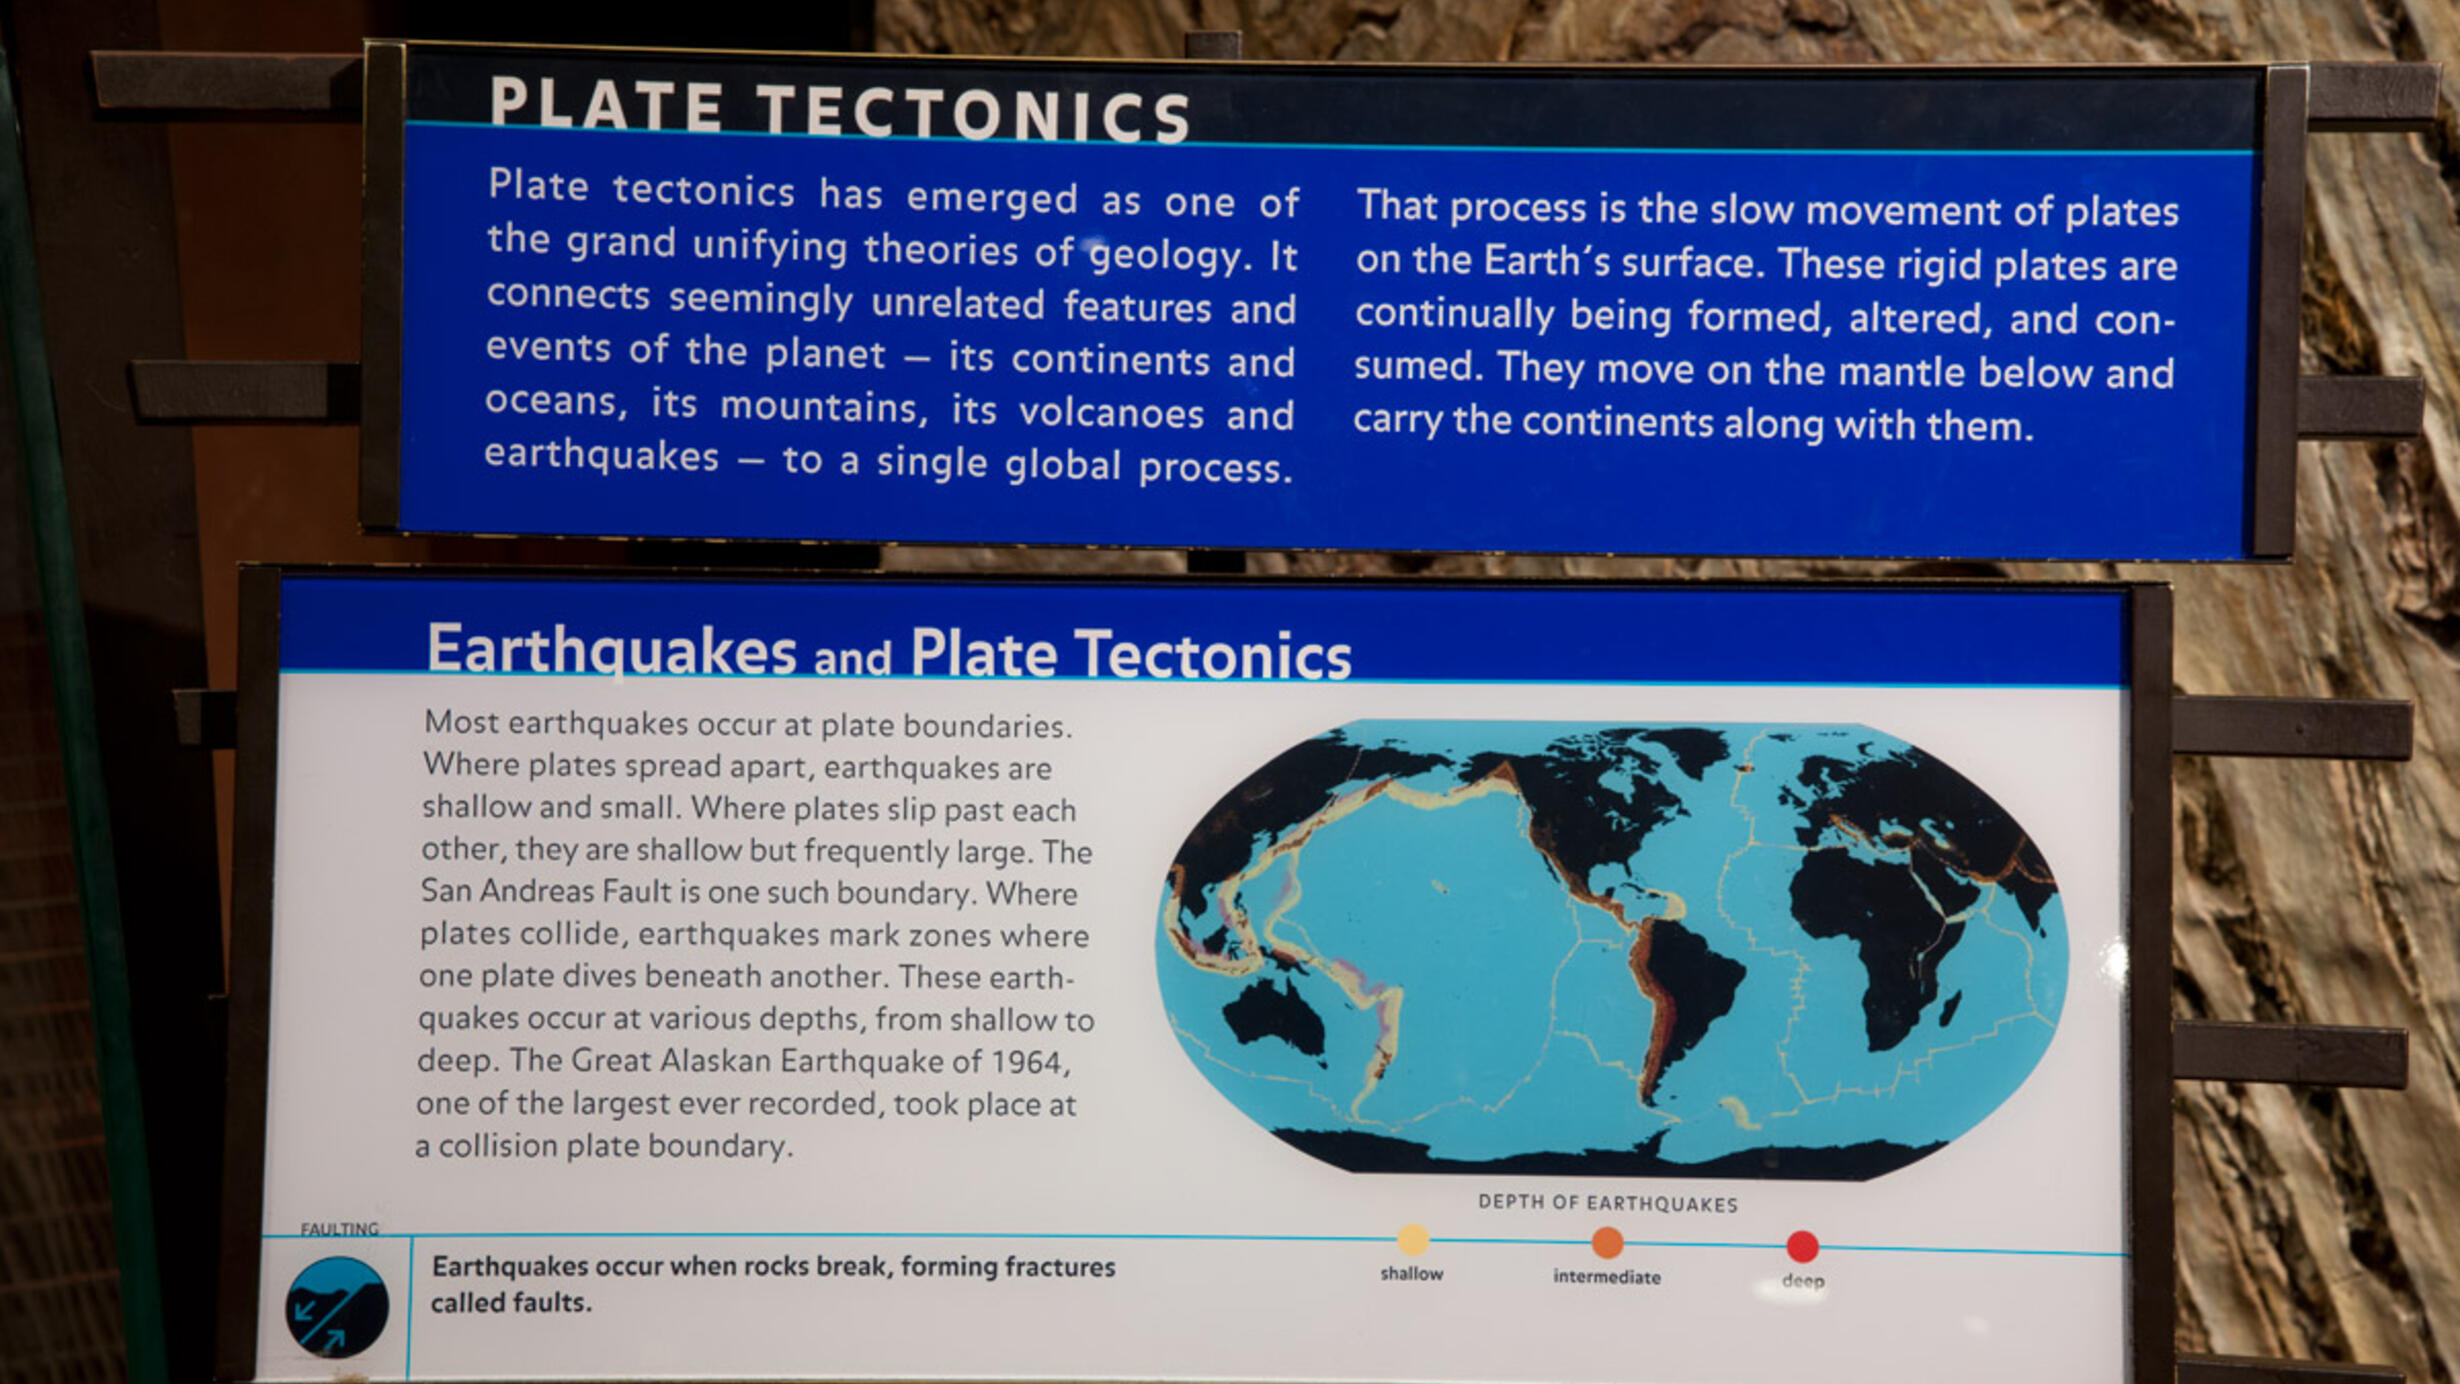 Earthquakes and Plate Tectonics